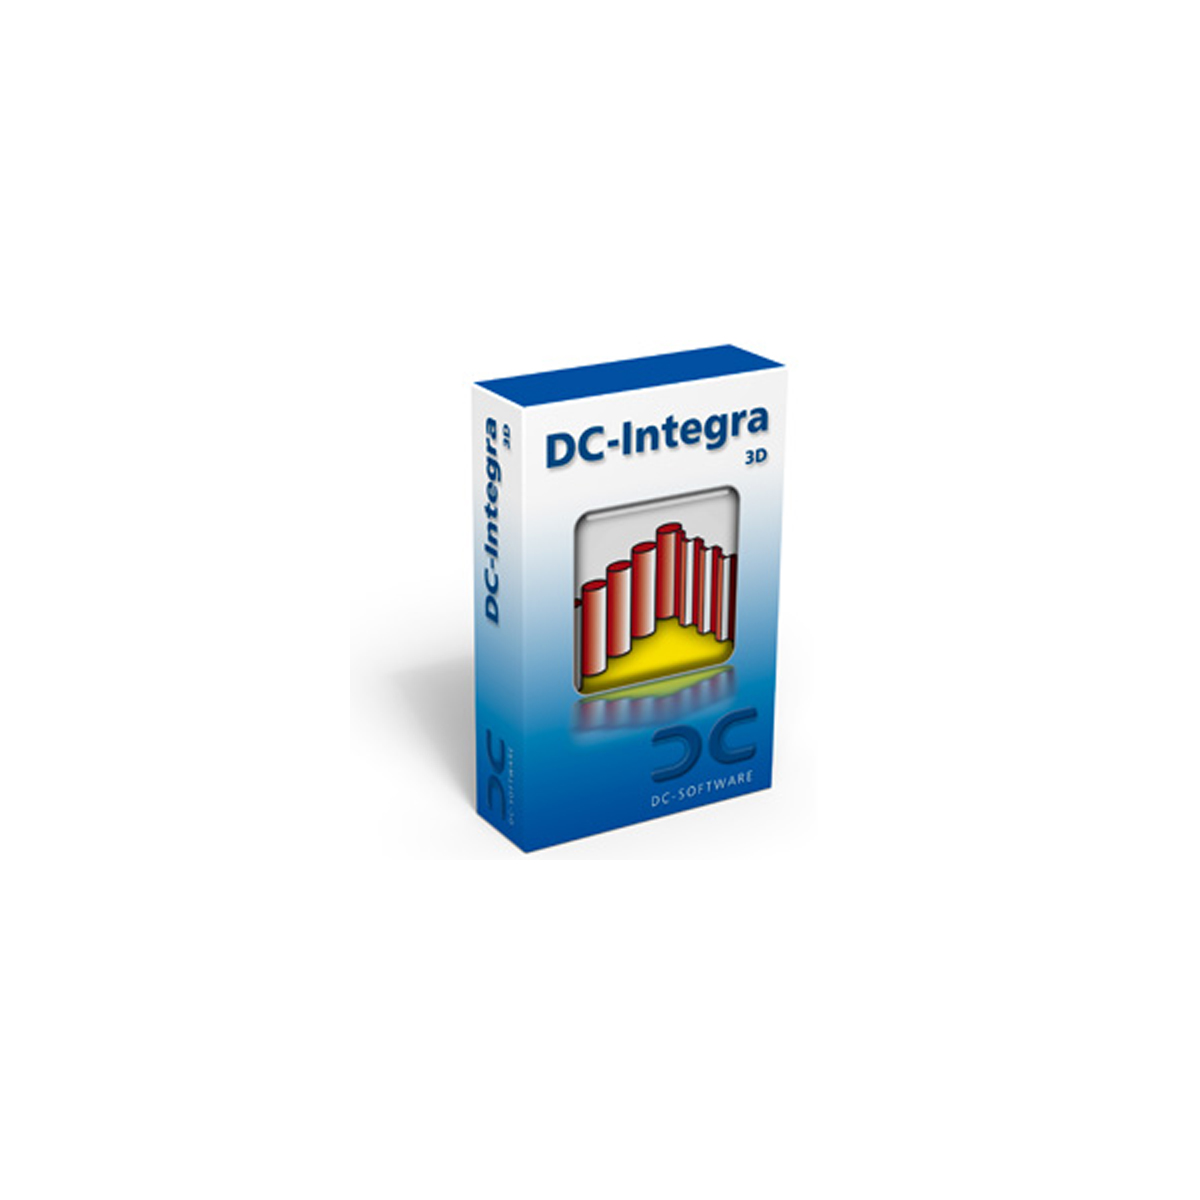 15-Software-za-geotehniku-DC-Integra 3D